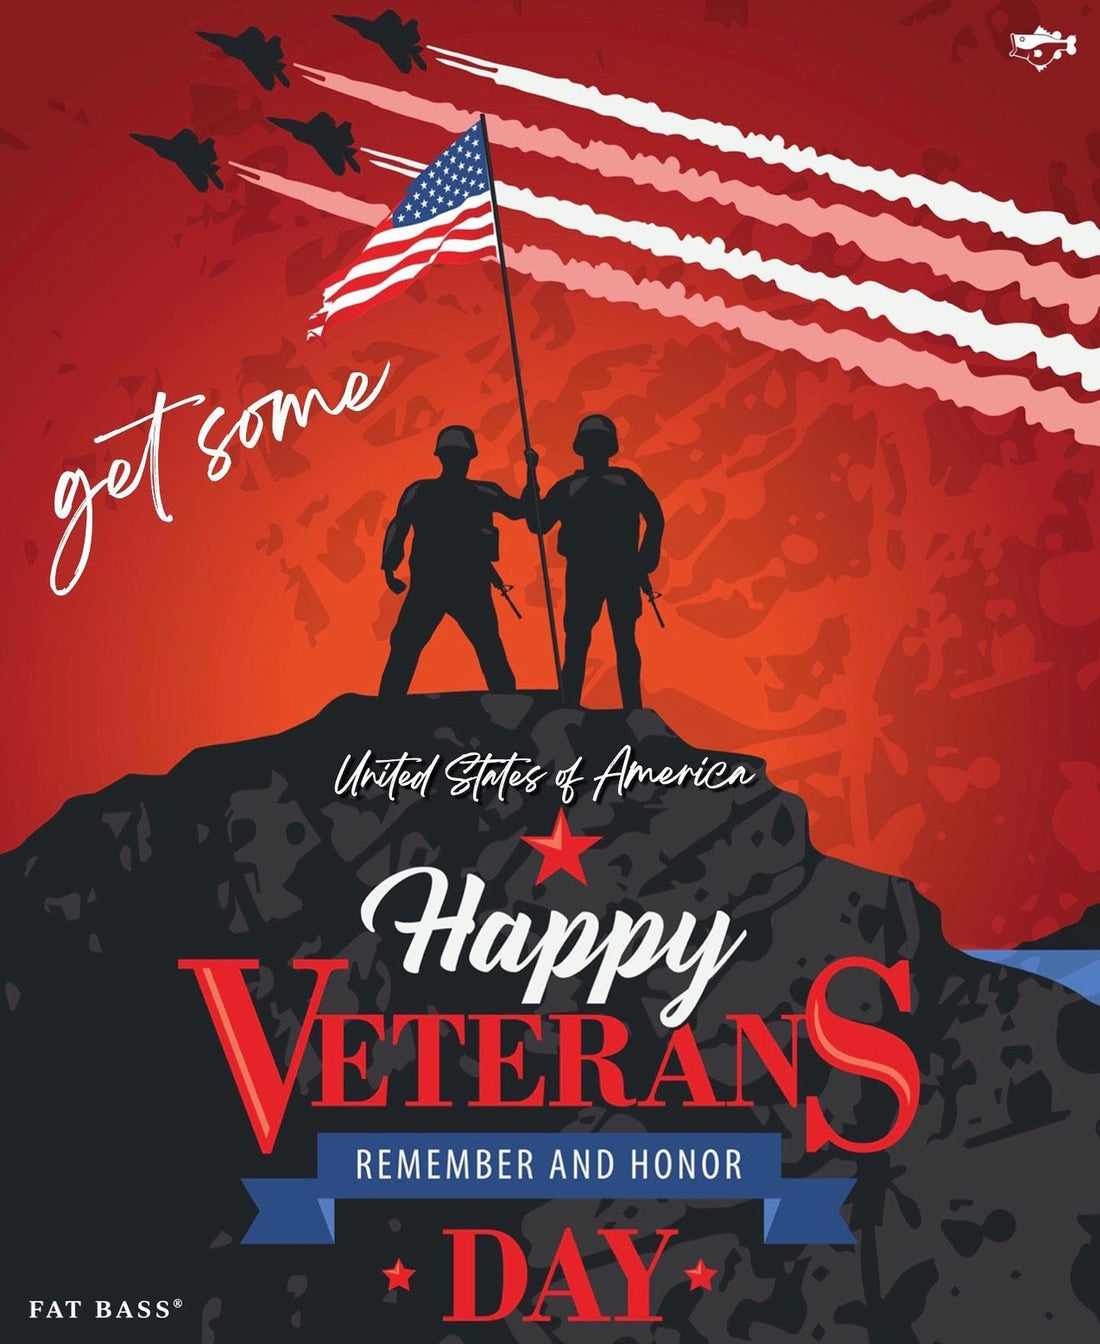 Happy Veterans Day!!!!